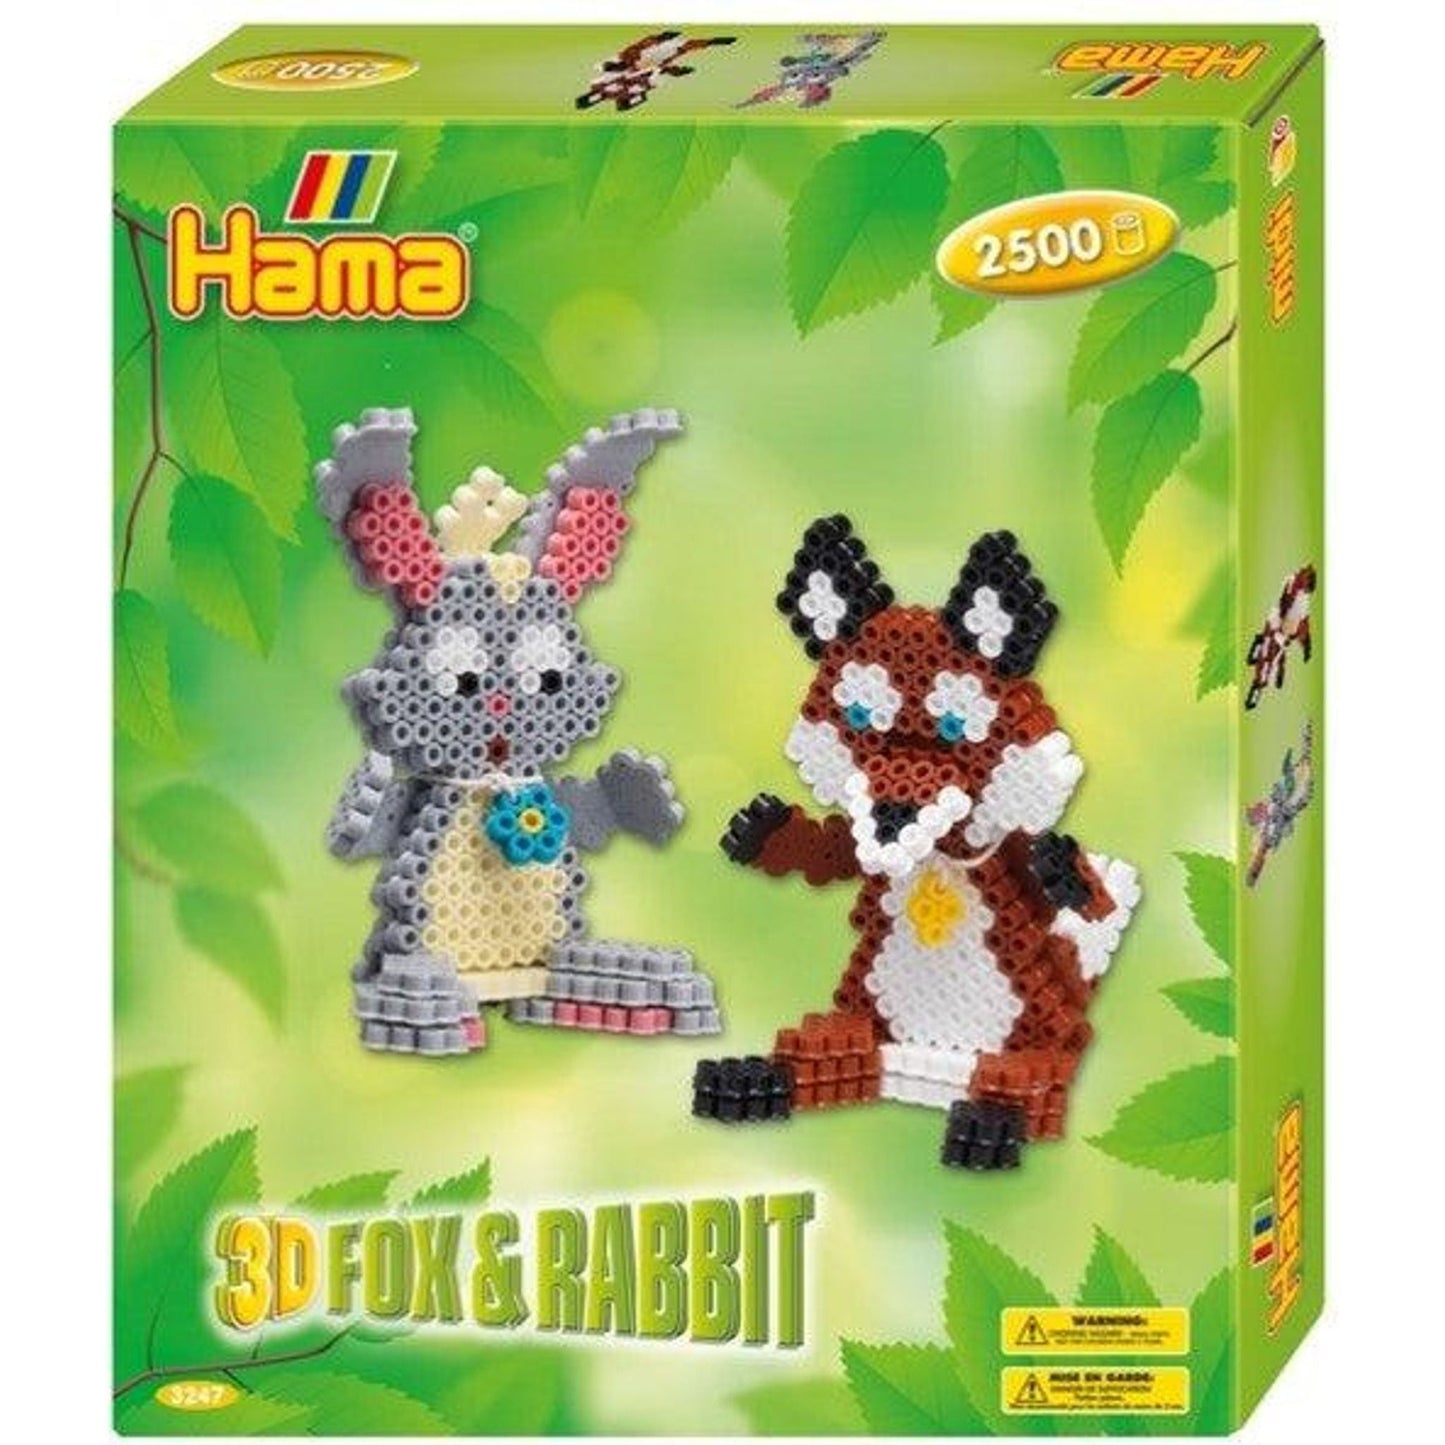 3D Fox & Rabbit - Toybox Tales